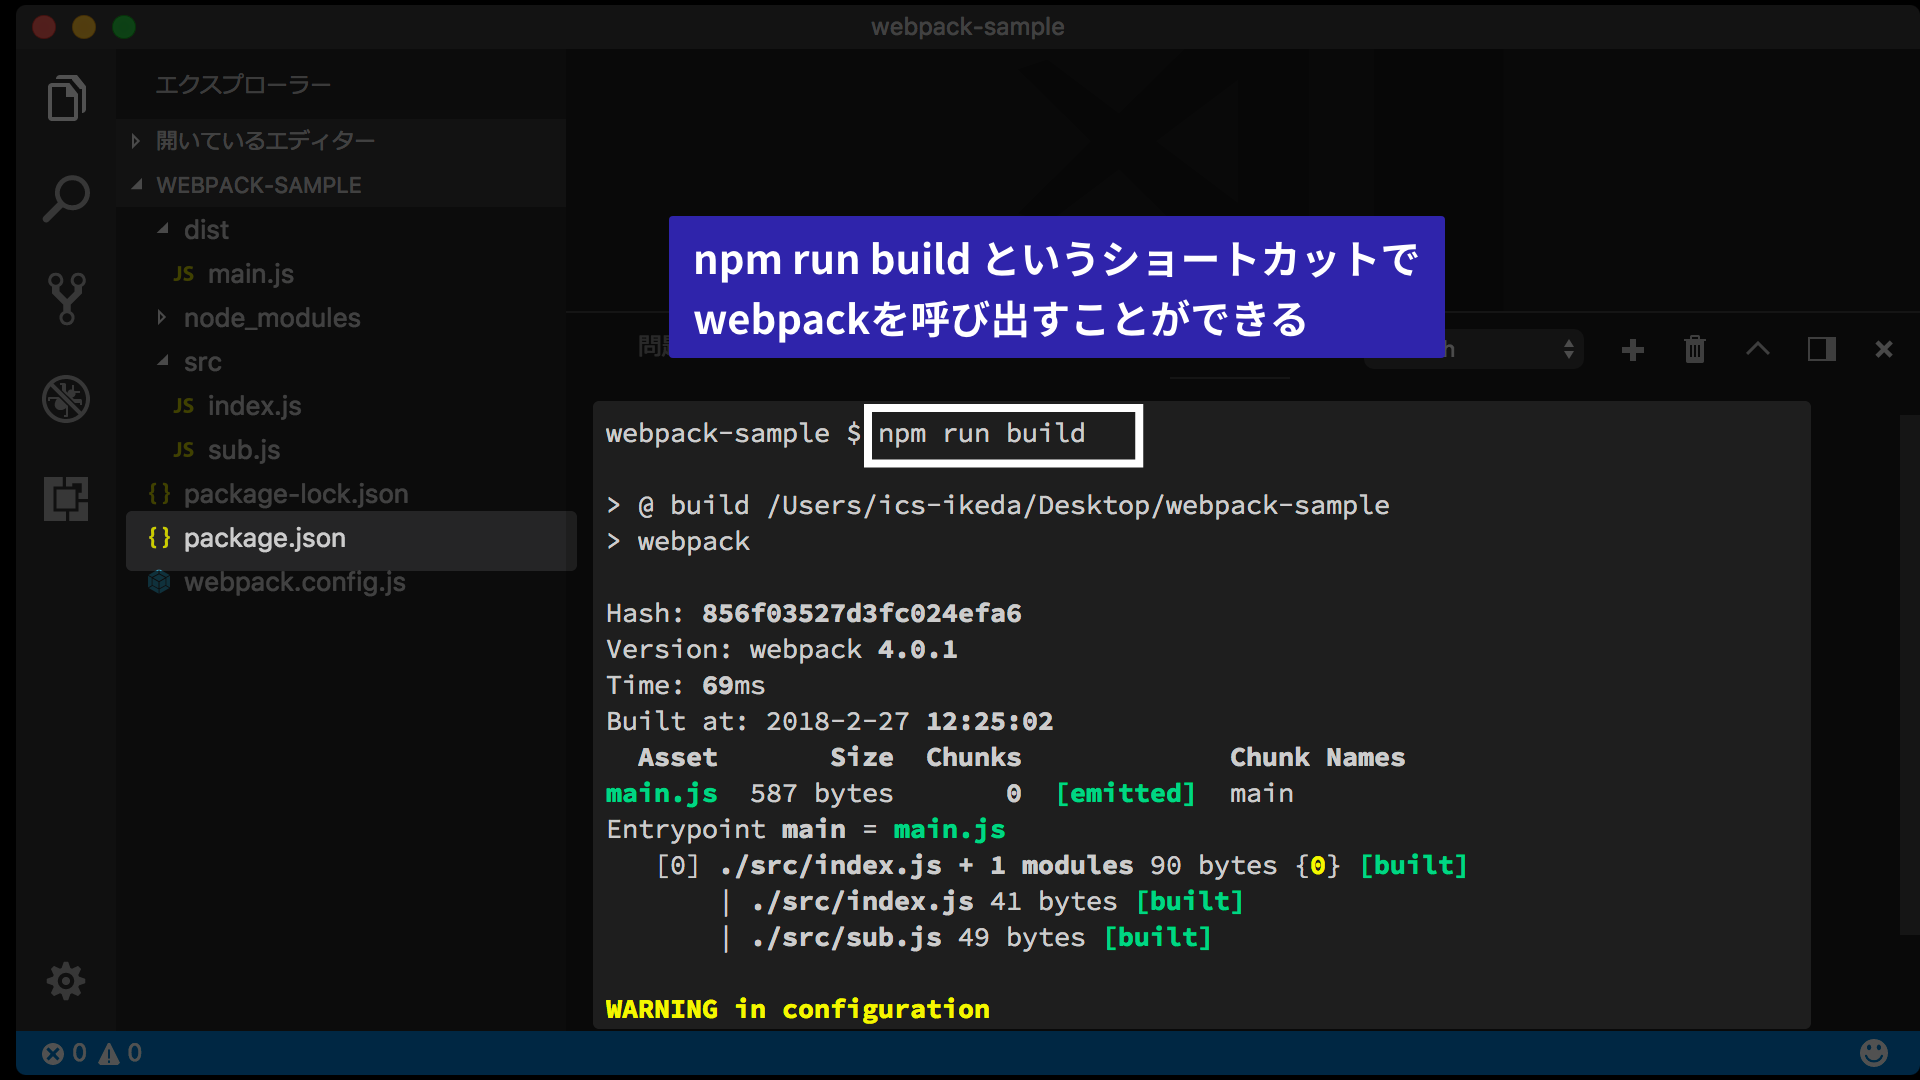 npm run build というショートカットで webpackを呼び出すことができる